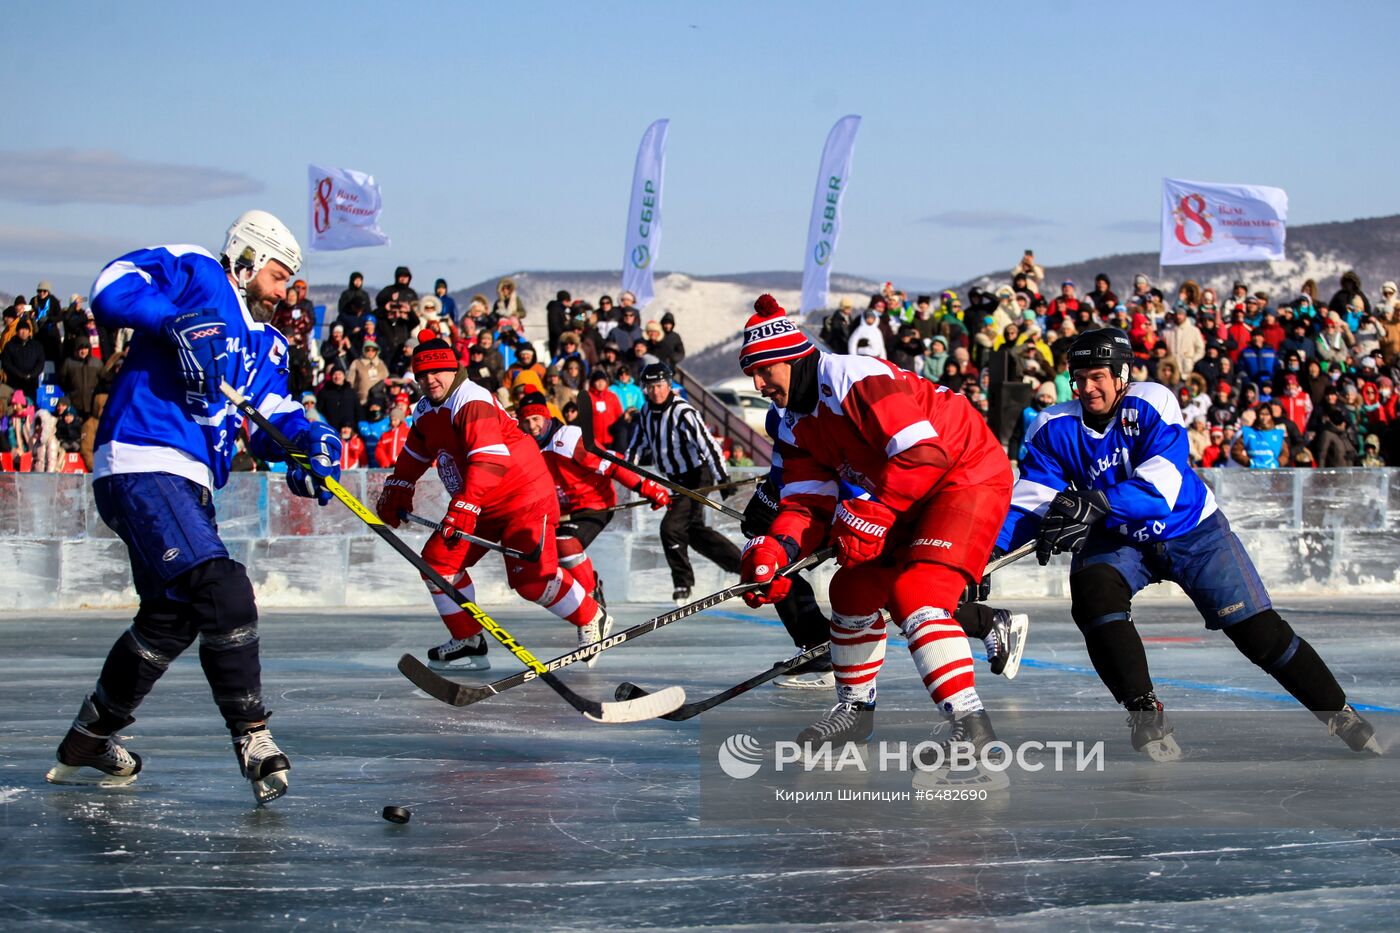 Хоккейный матч на озере Байкал